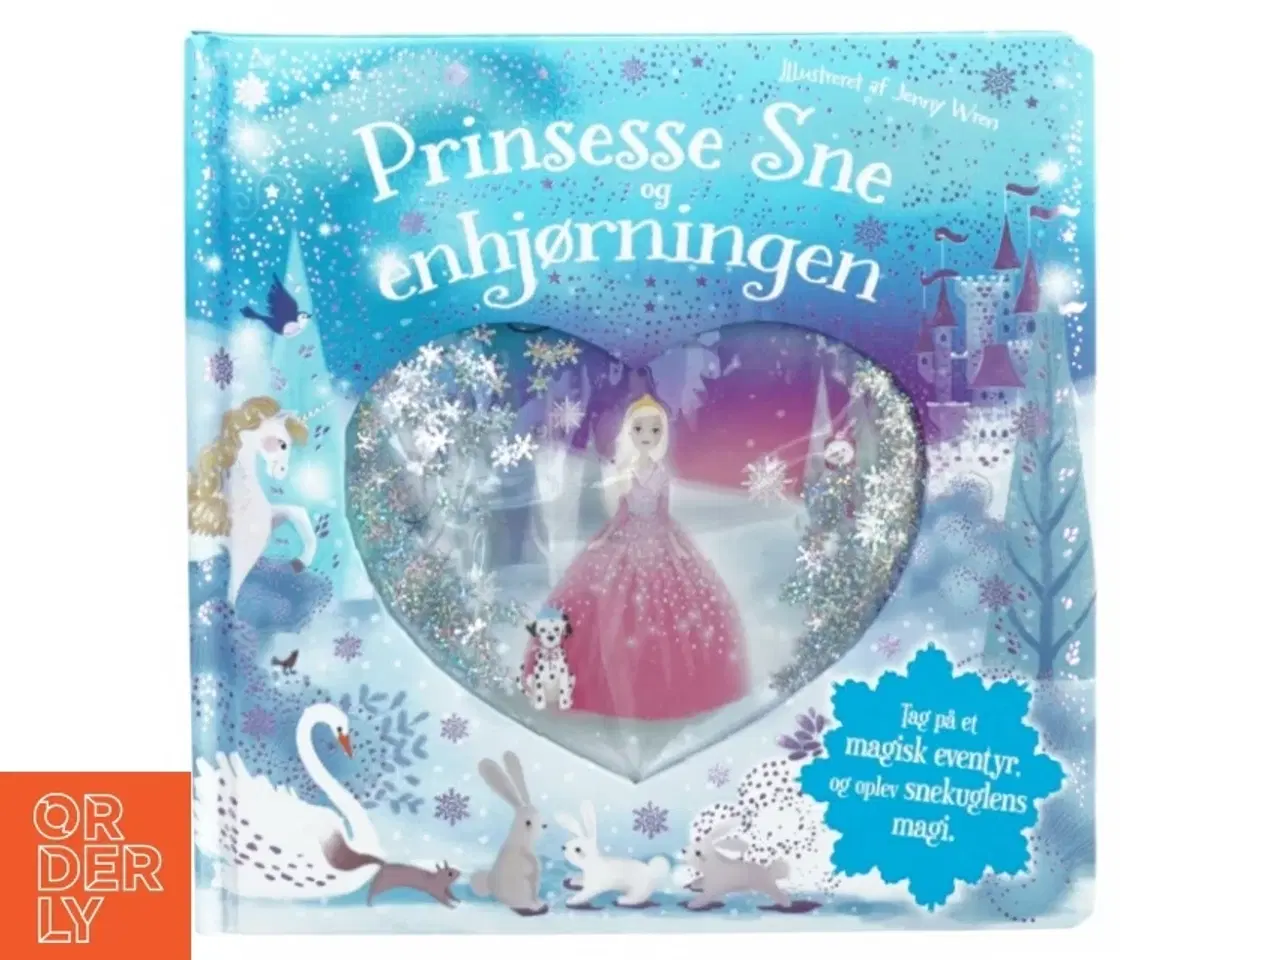 Billede 1 - Prinsesse sne og enhjørningen fra Karrusel Forlag (str. 23 cm)